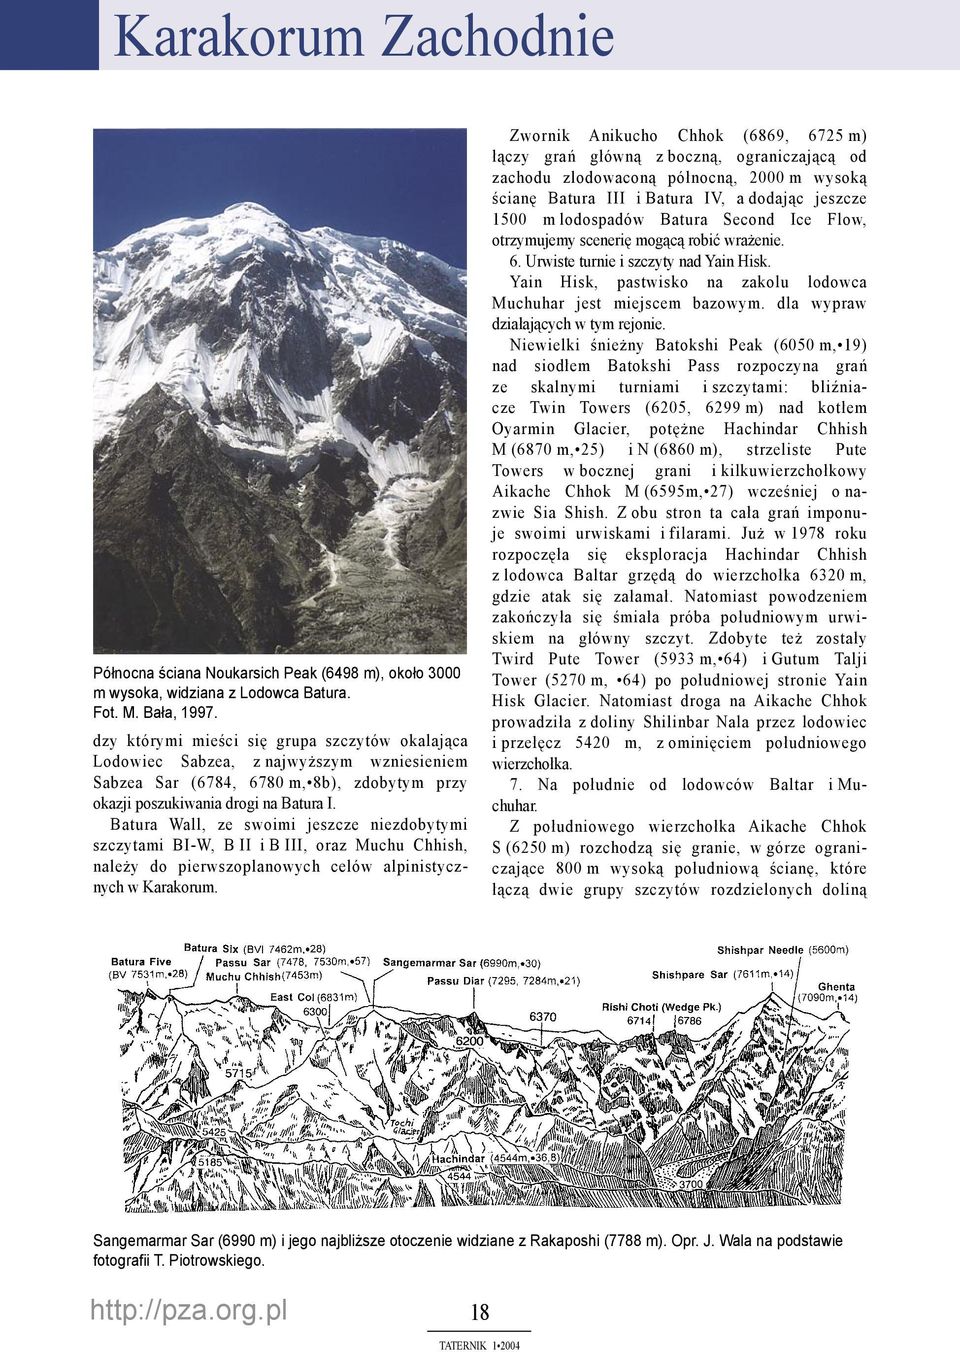 Batura Wall, ze swoimi jeszcze niezdobytymi szczytami BI-W, B II i B III, oraz Muchu Chhish, należy do pierwszoplanowych celów alpinistycznych w Karakorum.